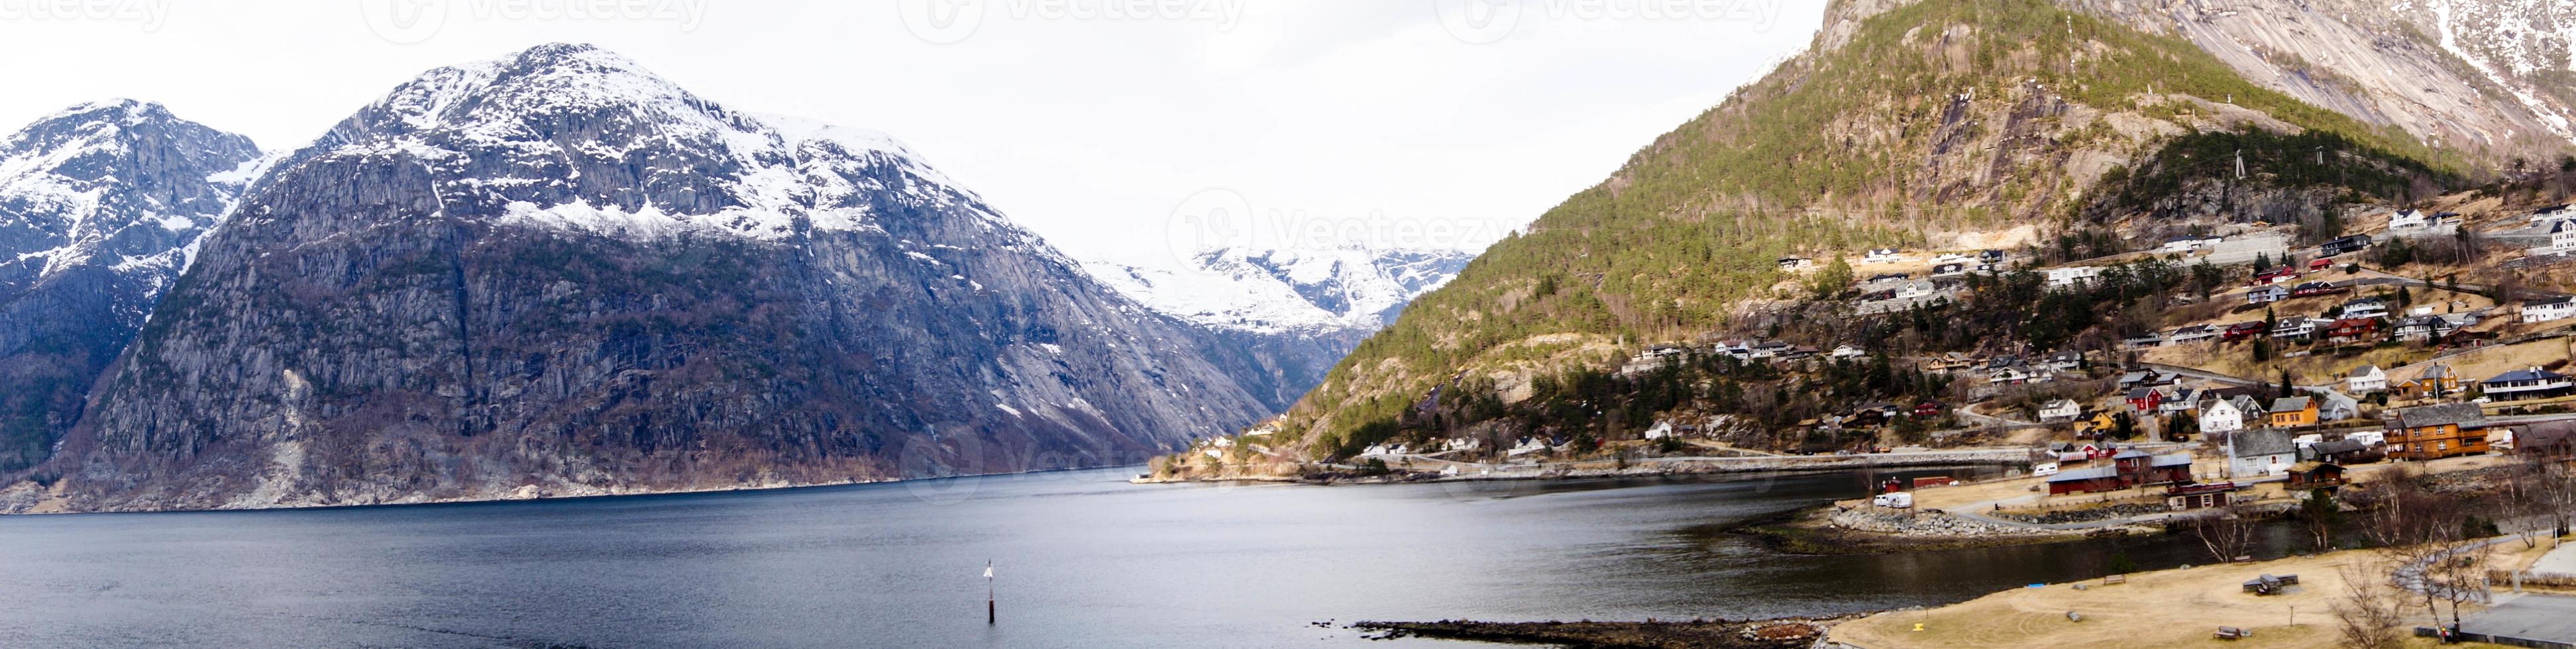 Blick von einem Kreuzfahrtschiff in den Fjorden Norwegens foto